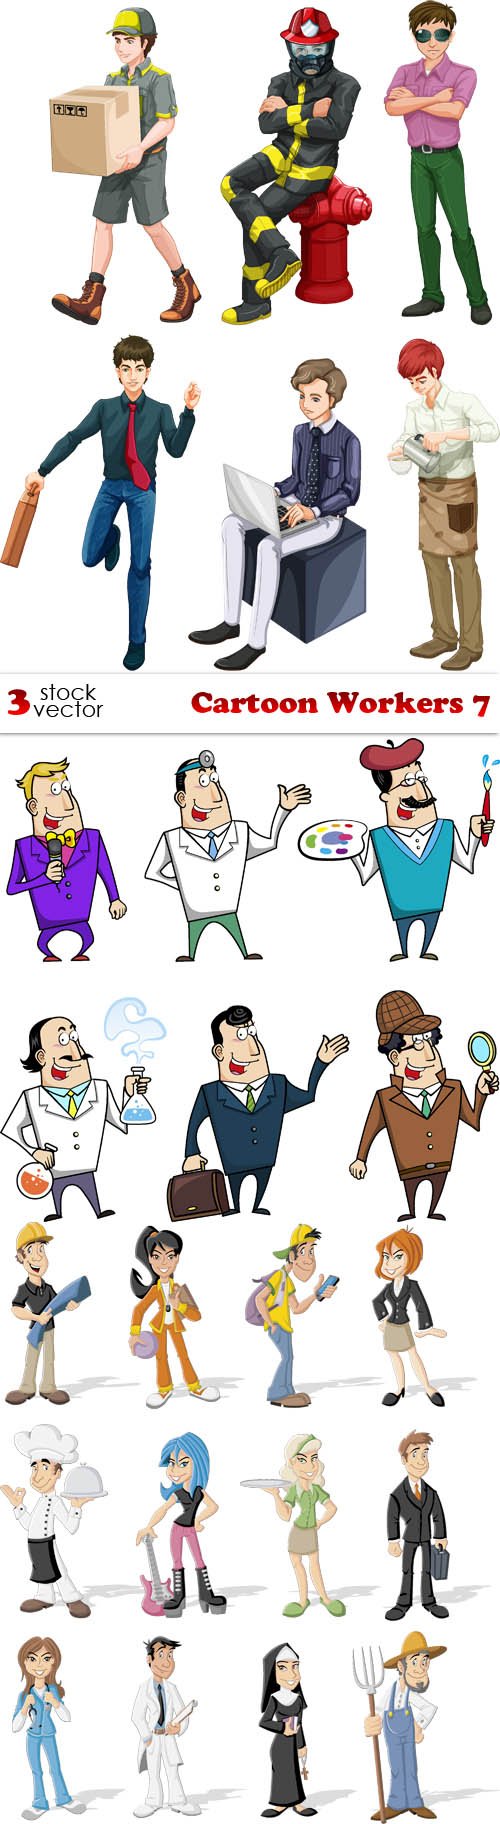 Vectors - Cartoon Workers 7